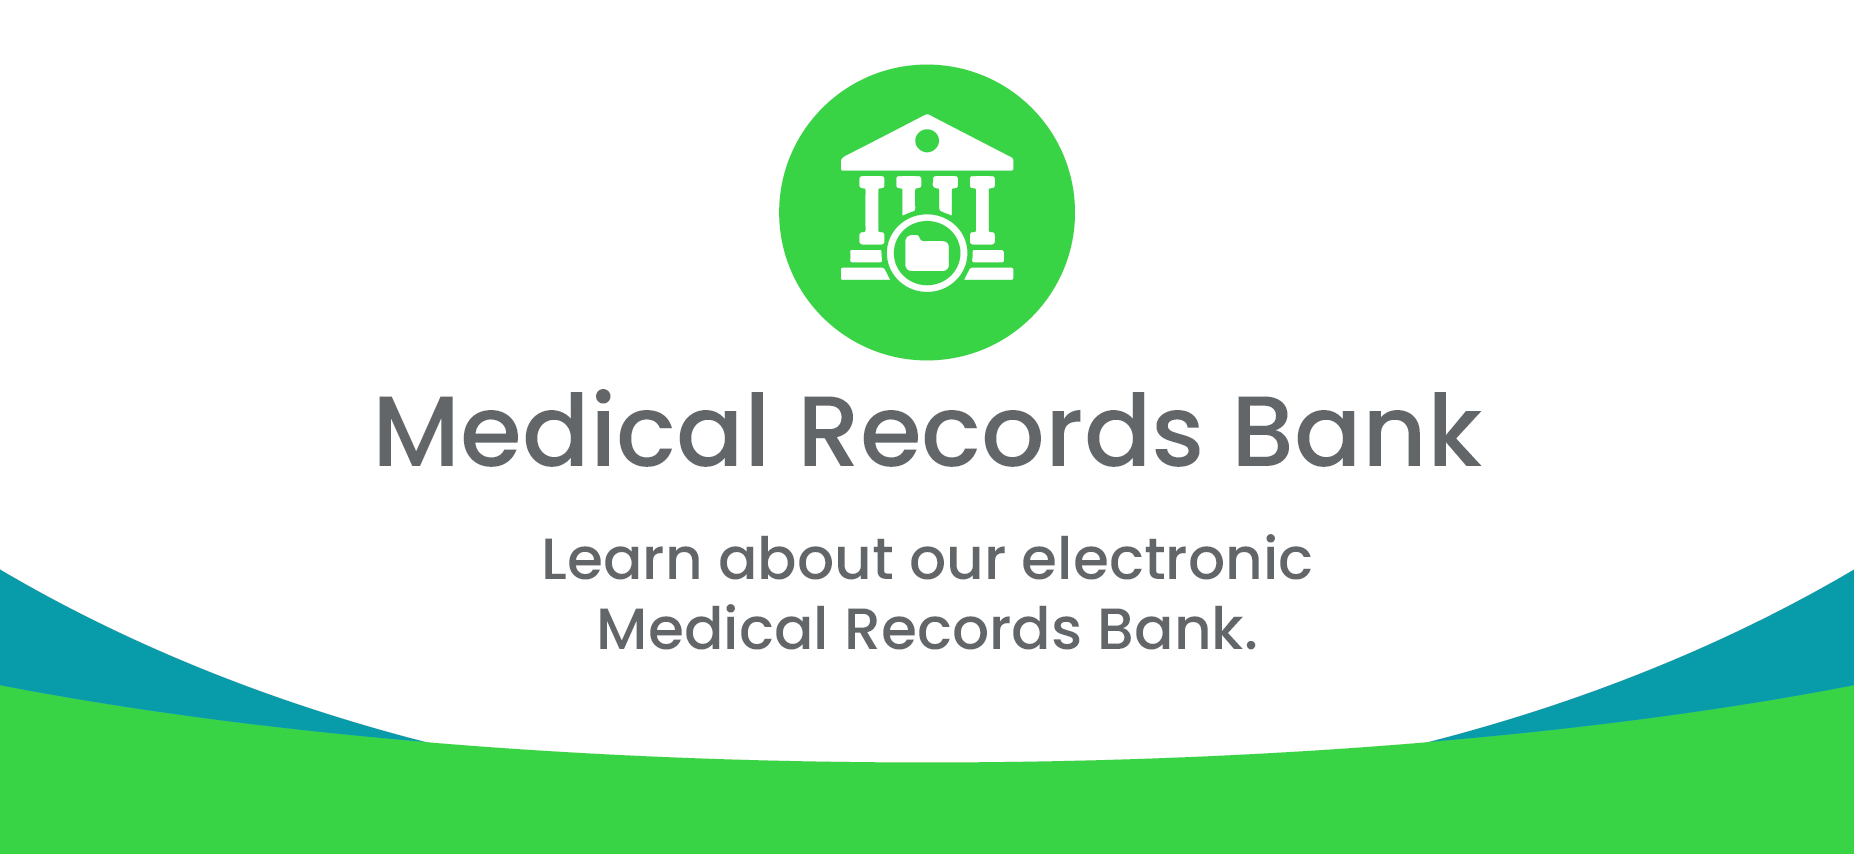 Medical Records Bank